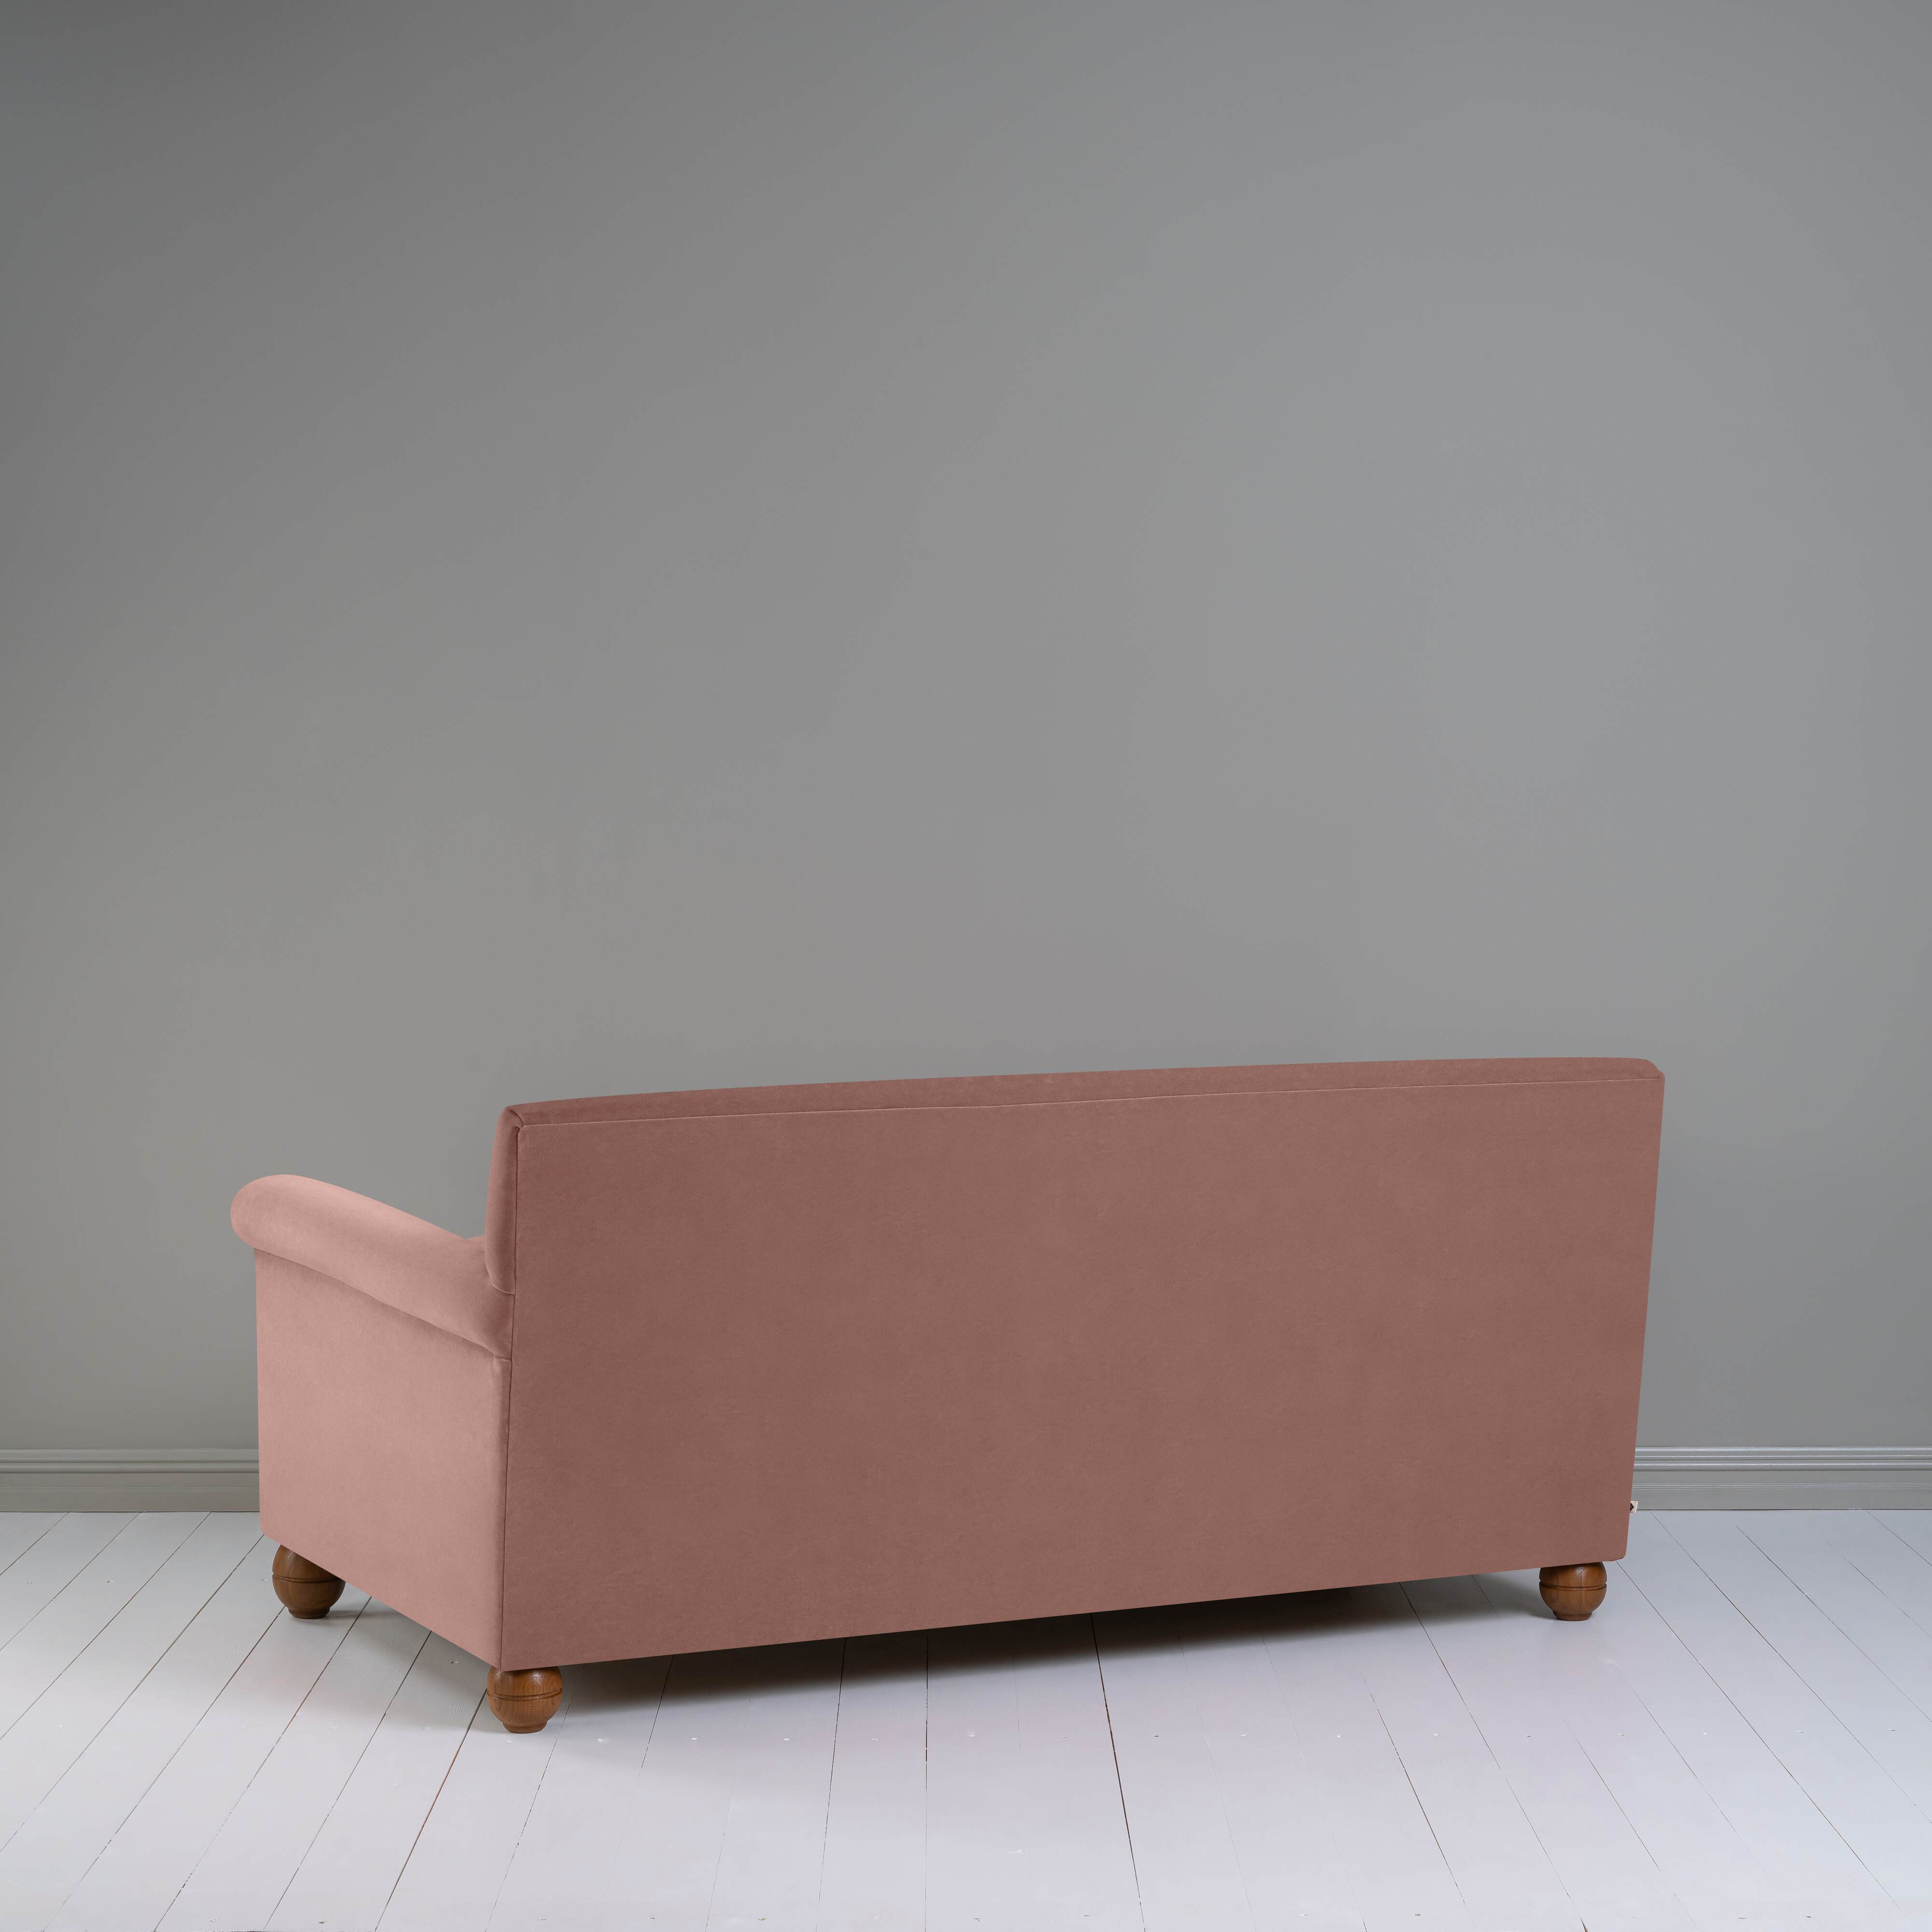  Idler 3 Seater Sofa in Intelligent Velvet Dusky Pink 